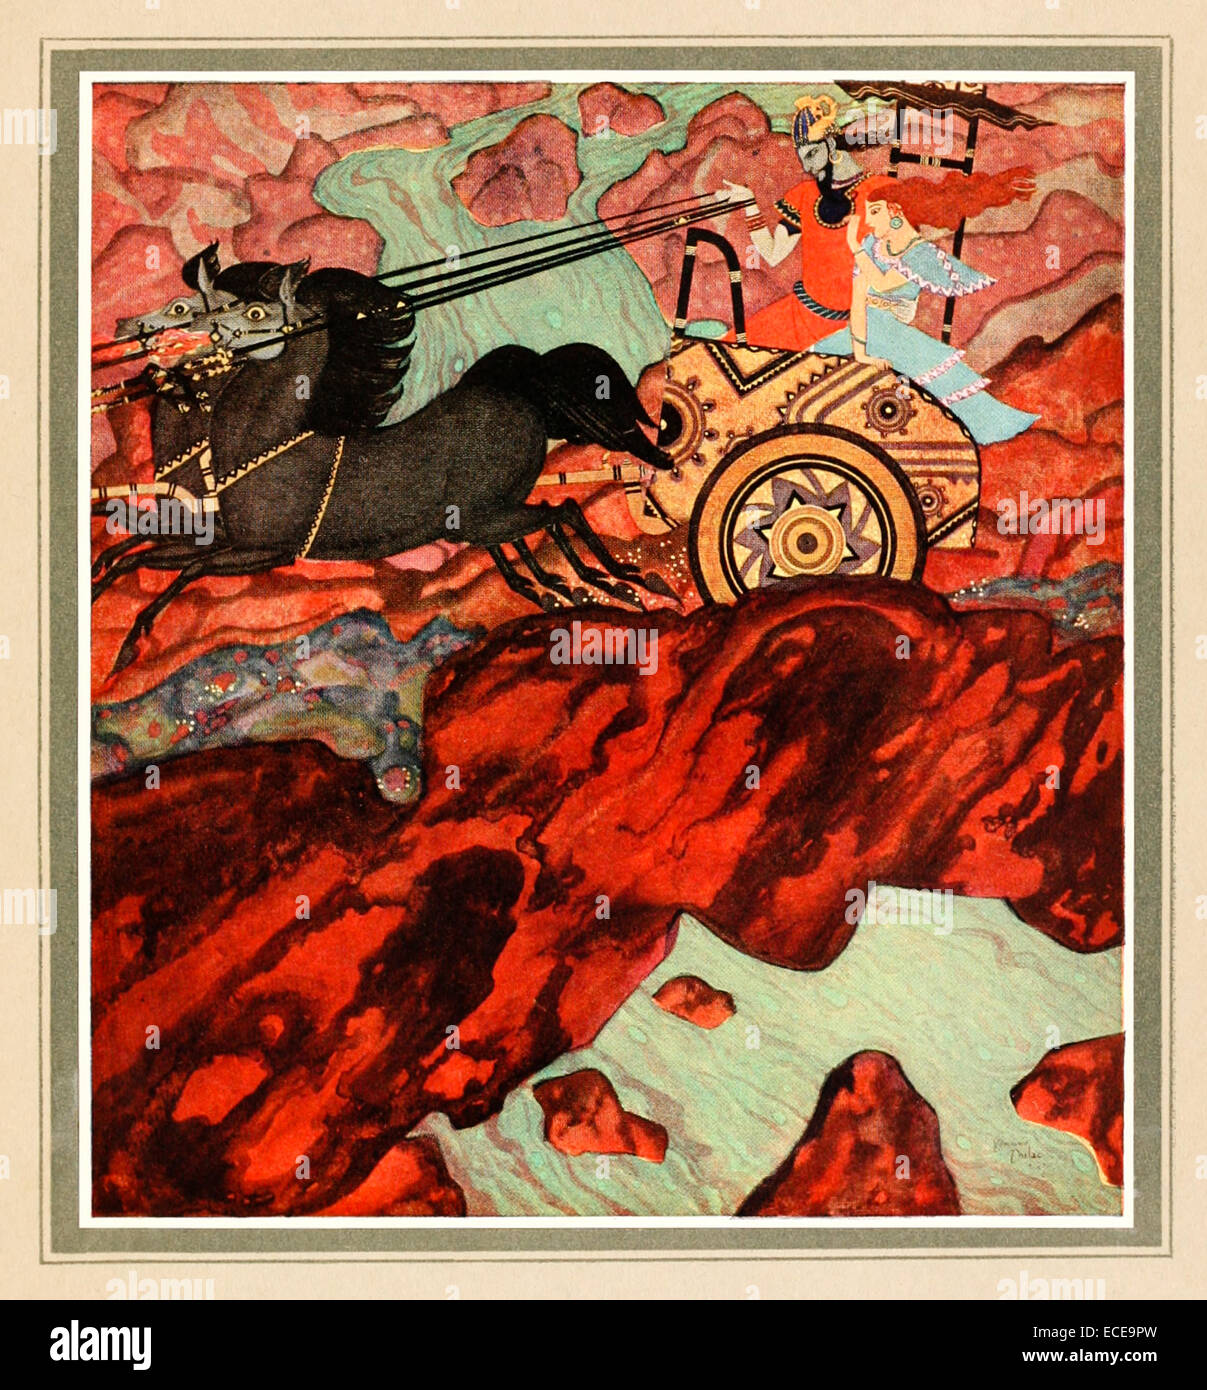 König Pluto reiten seinen Wagen - Edmund Dulac Illustration aus "Tanglewood Tales". Siehe Beschreibung für mehr Informationen. Stockfoto